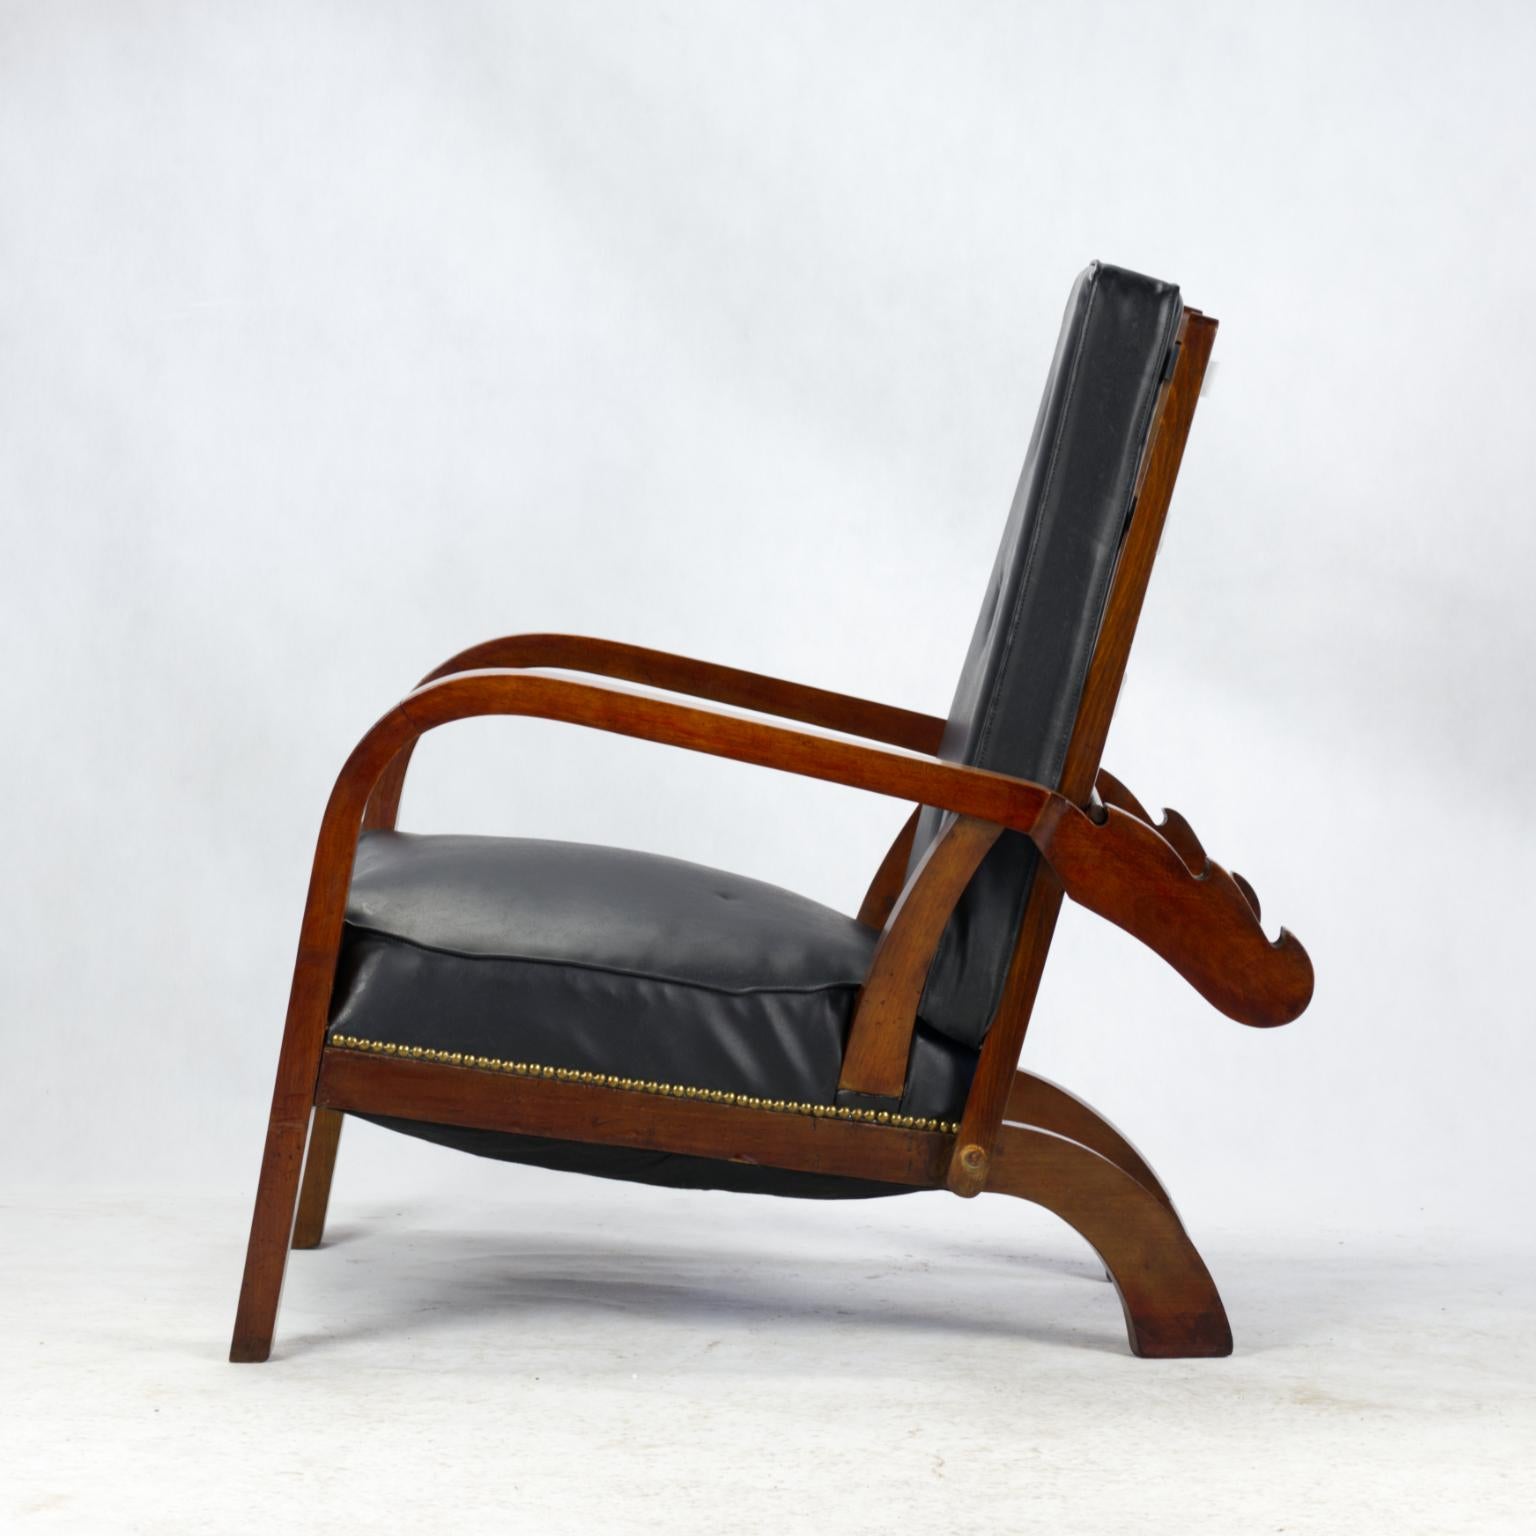 Großer Art-Deco-Liegestuhl, Tschechoslowakei, 1930er Jahre. Die Rückenlehne und der Sitz können in drei verschiedene Positionen gebracht werden, die Polsterung ist nicht original, sondern wurde in der Vergangenheit mit Kunstleder bezogen.